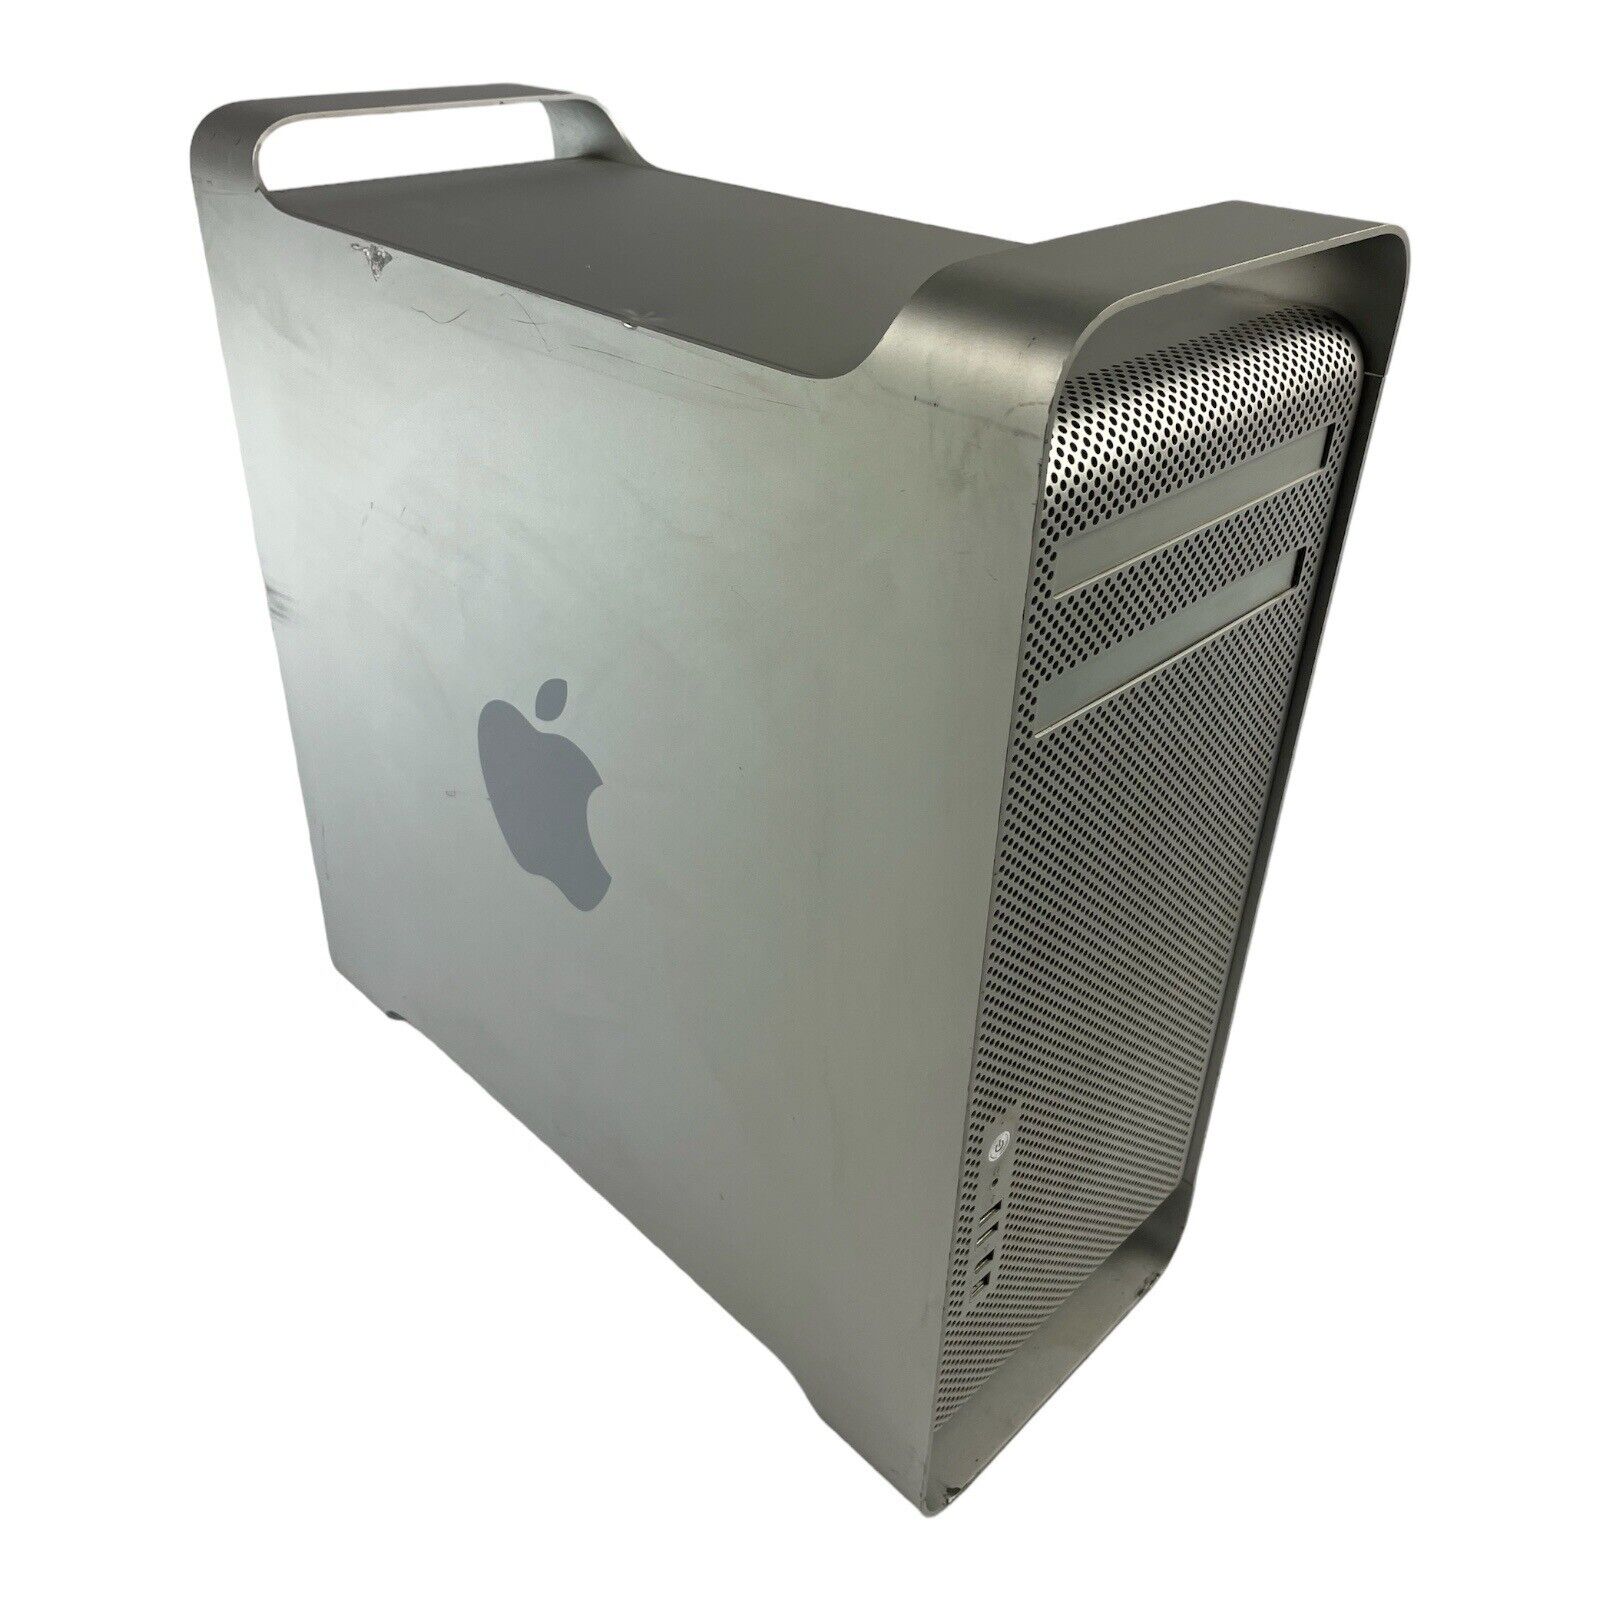 Apple Mac Pro A1186 EMC 2113 2 x 3.0 GHz Quad-Core 12GB 500GB HDD WIFI Snow Leop